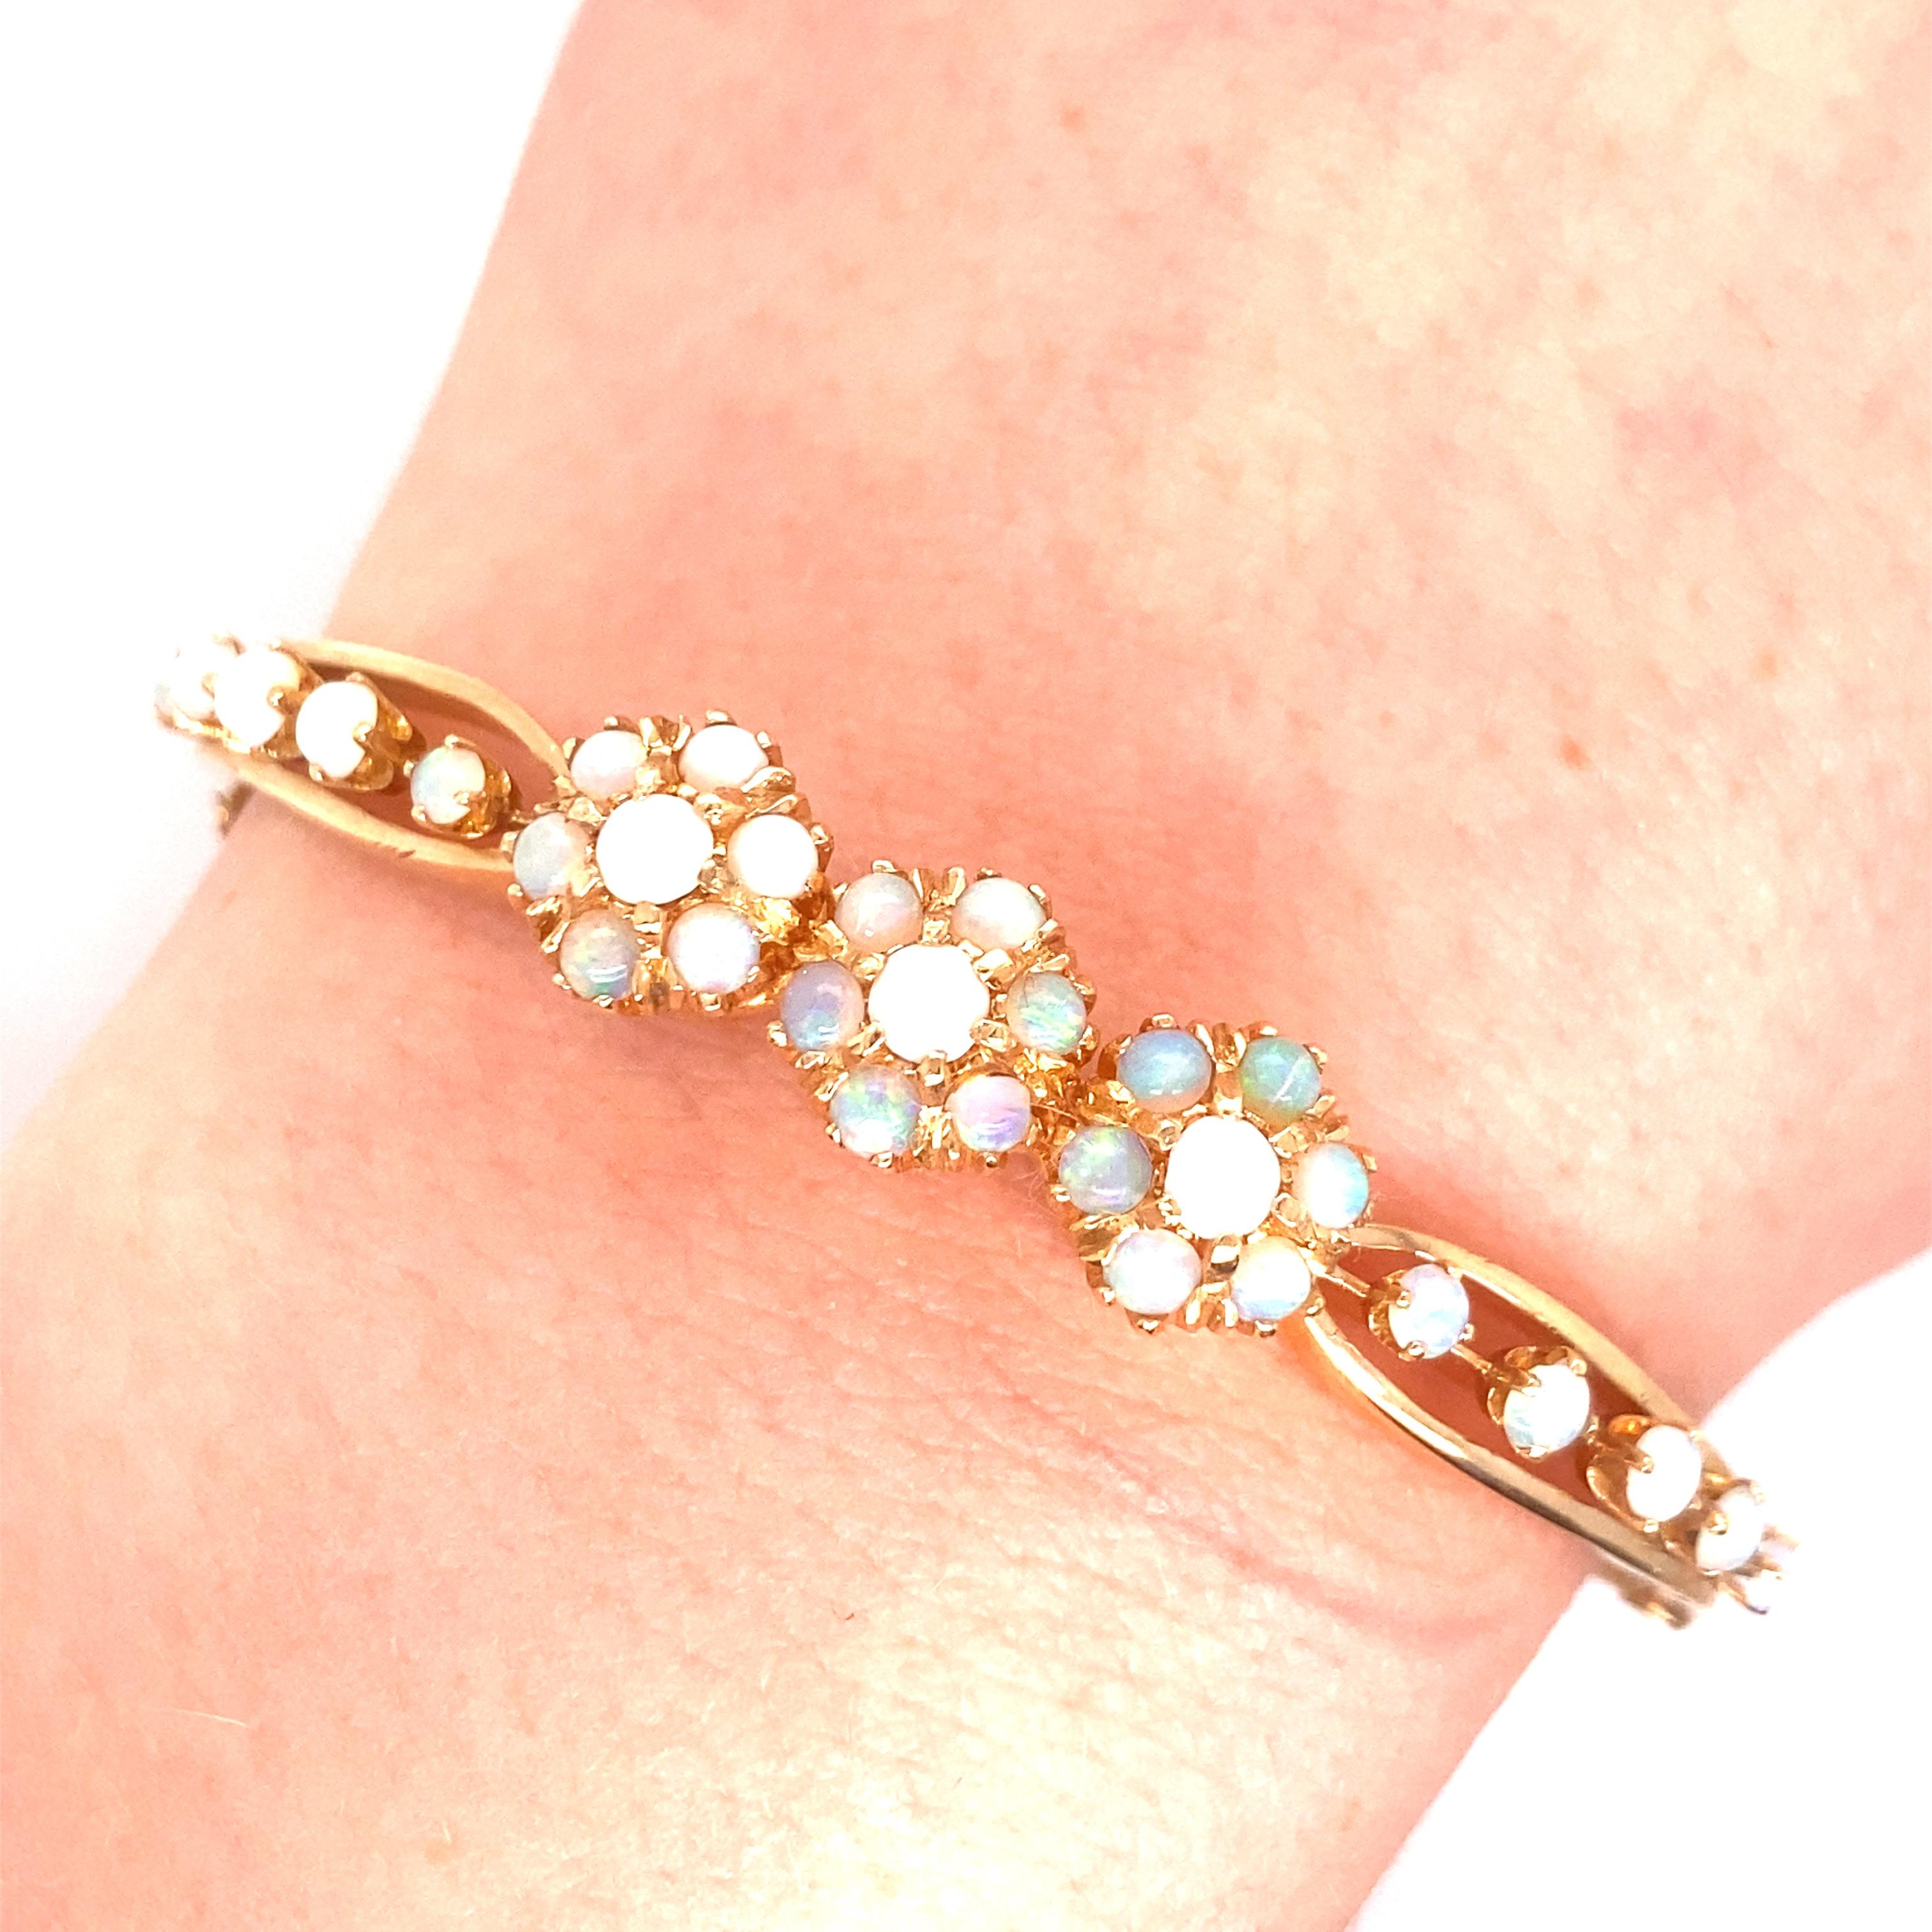 Vintage 14K Yellow Gold Victorian Reproduction Opal Bangle - Le bracelet a 3 fleurs composées de 7 opales rondes chacune avec 5 opales supplémentaires sur chaque côté. Les opales présentent un jeu de couleurs vertes et rouges. La largeur du bracelet